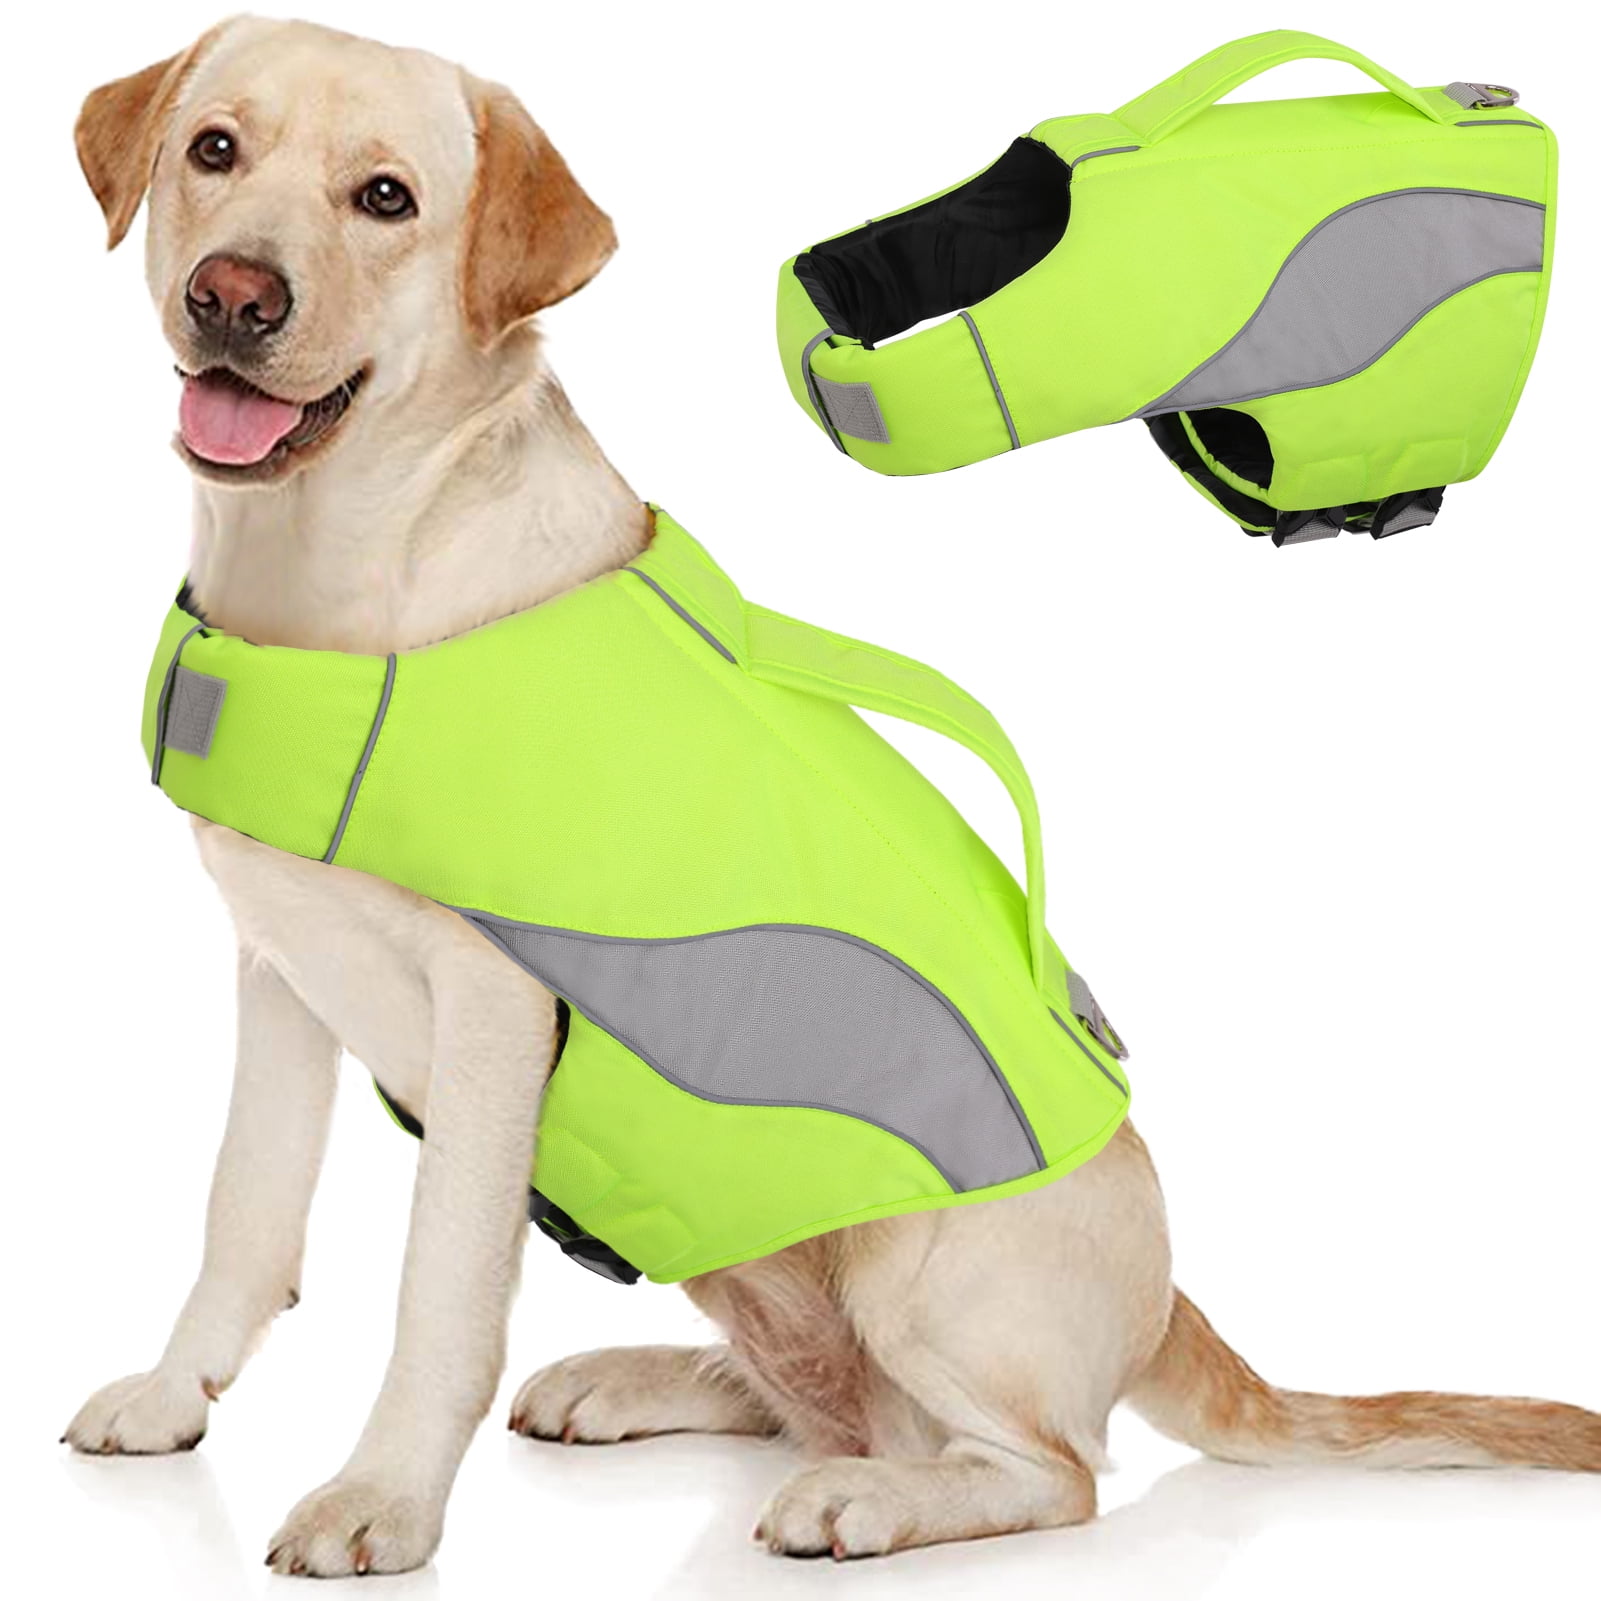 Details about   Dog Puppy Pet Life Jacket Dog Swimming Flotation Saver Safety Vest   ！* 